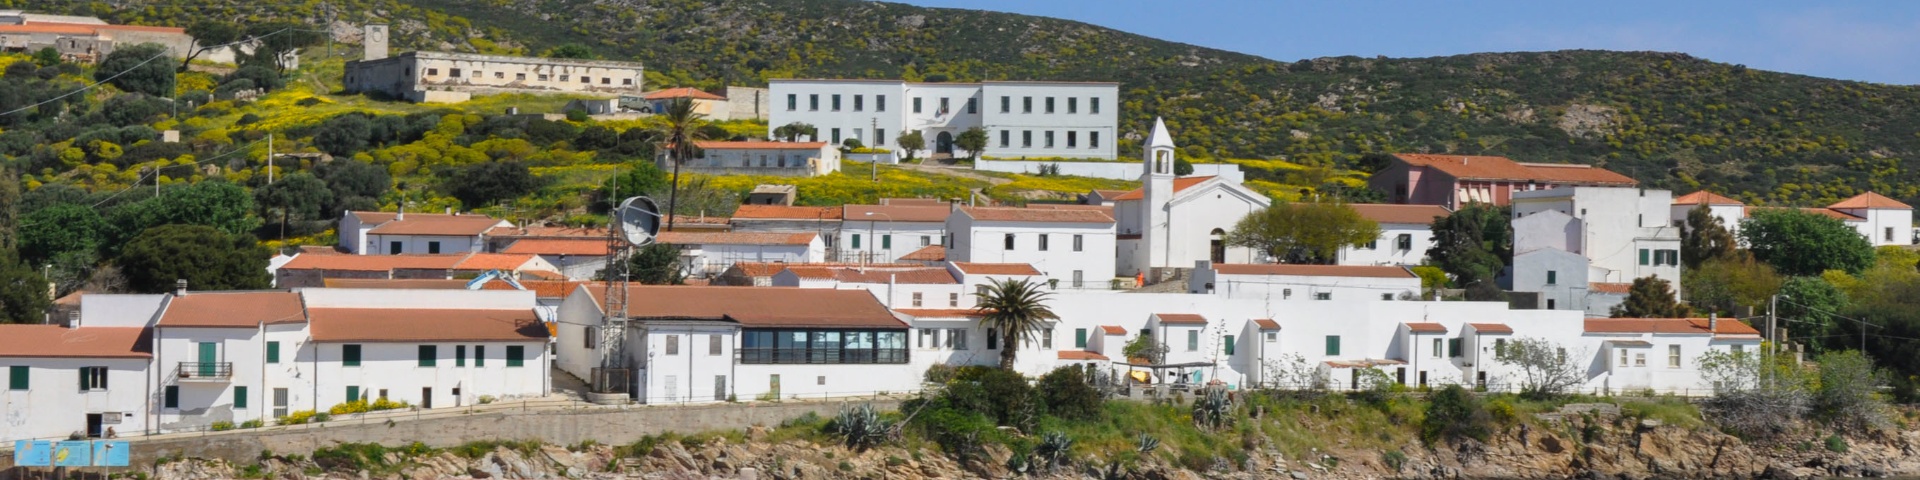 Isola dell'Asinara 